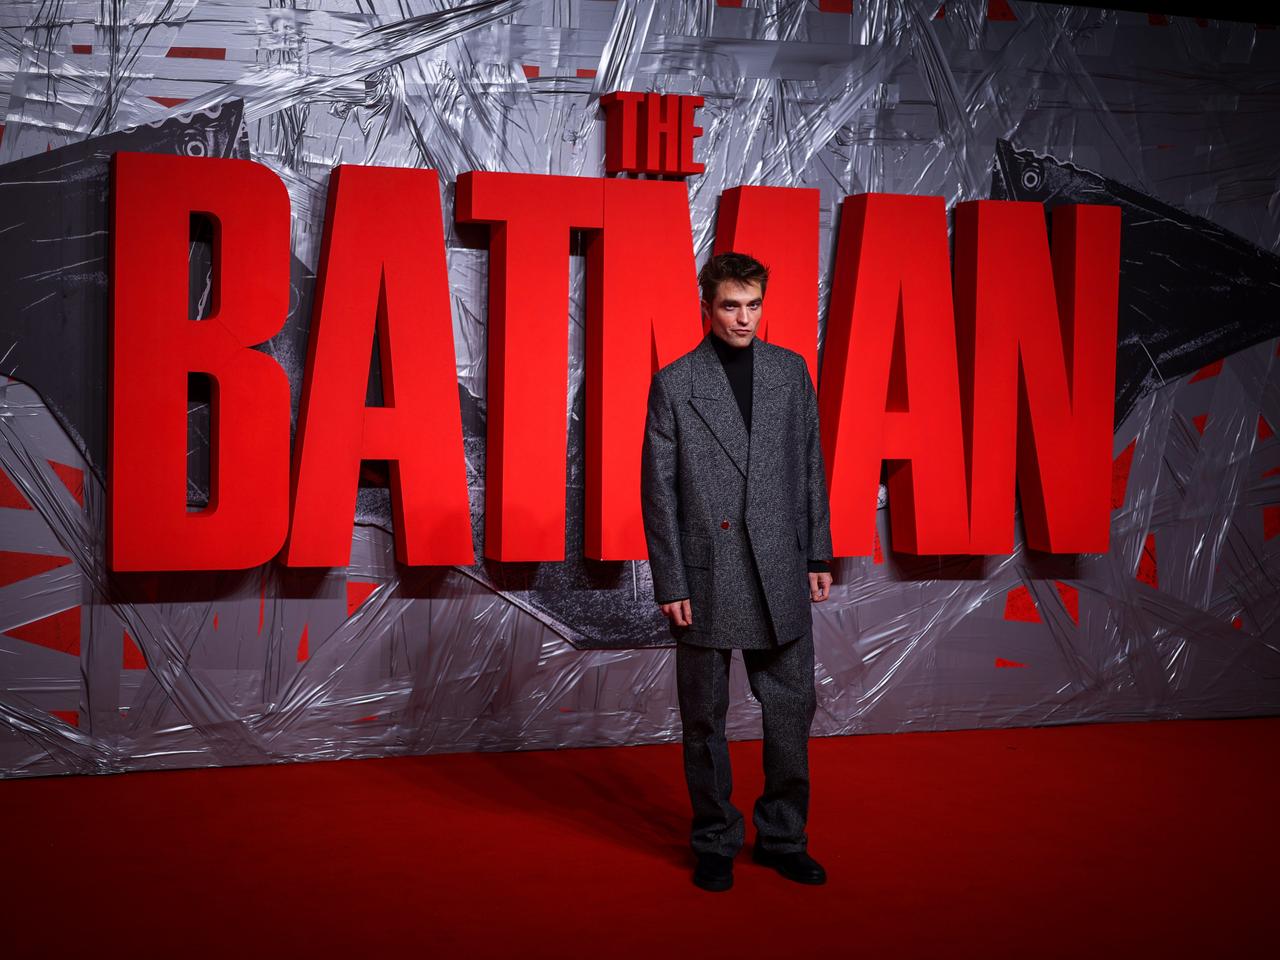 ｢THE BATMAN-ザ・バットマン-｣の試写会に出席した主演のロバート・パティンソン。